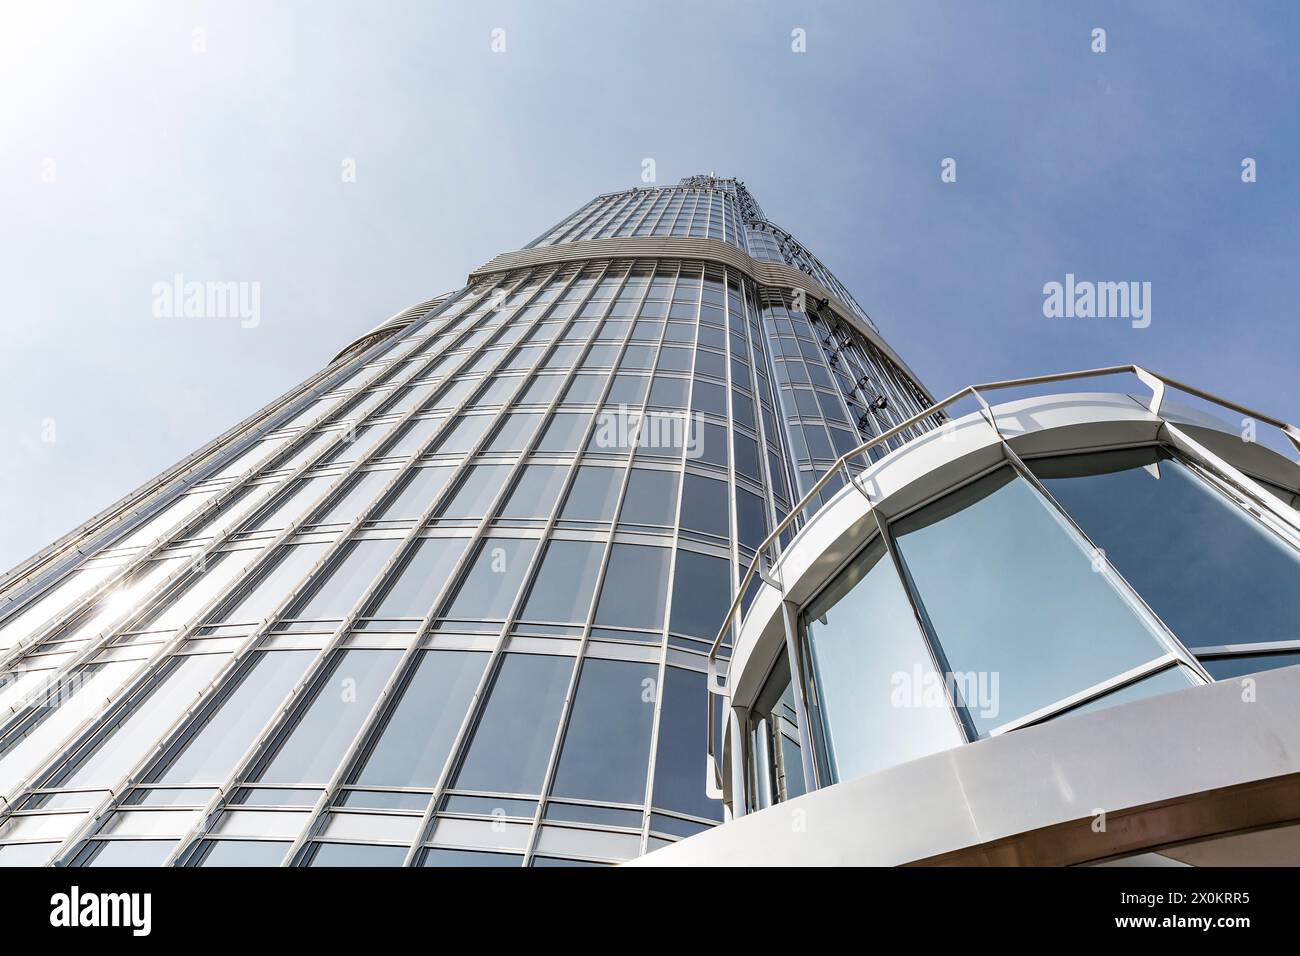 Vista verso l'alto dalla piattaforma per i visitatori alla sommità al 124° piano a 450 m di altezza, Burj Khalifa, l'edificio più alto del mondo, alto 830 m, grattacielo, skyline, Dubai, Emirati Arabi Uniti, Medio Oriente, Asia Foto Stock